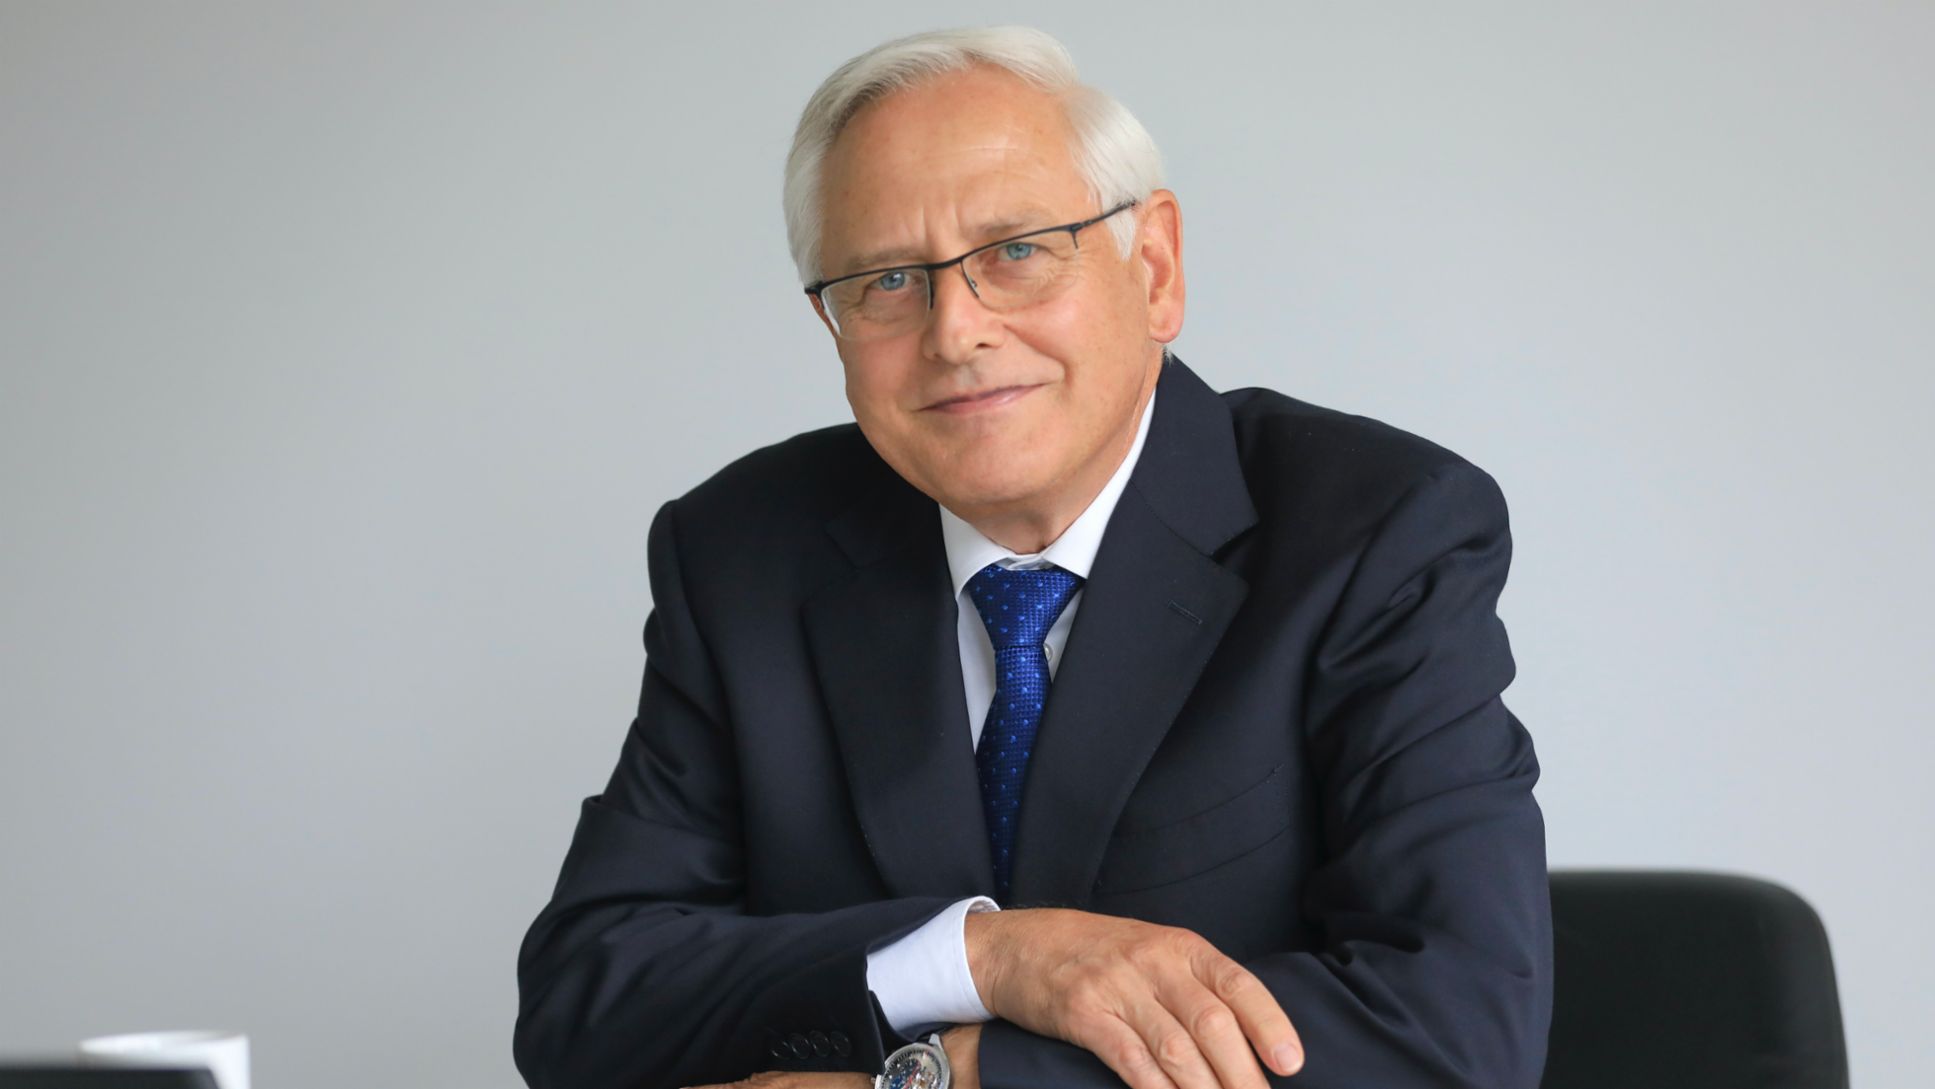 Uwe Karsten Städter, former member of the Executive Board Procurement, 2021, Porsche AG